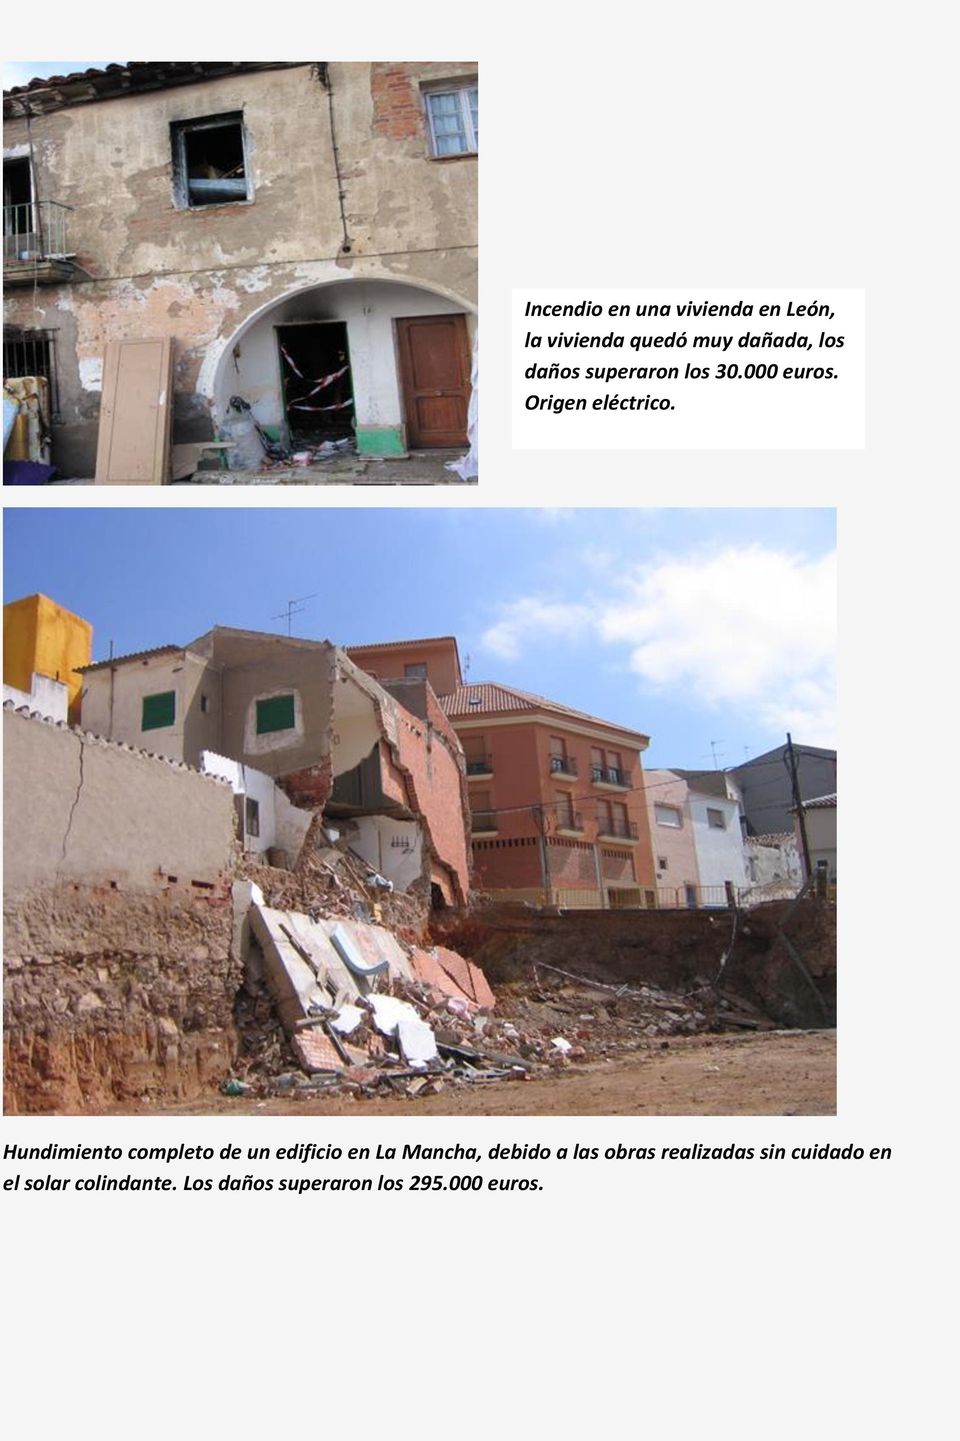 Hundimiento completo de un edificio en La Mancha, debido a las obras